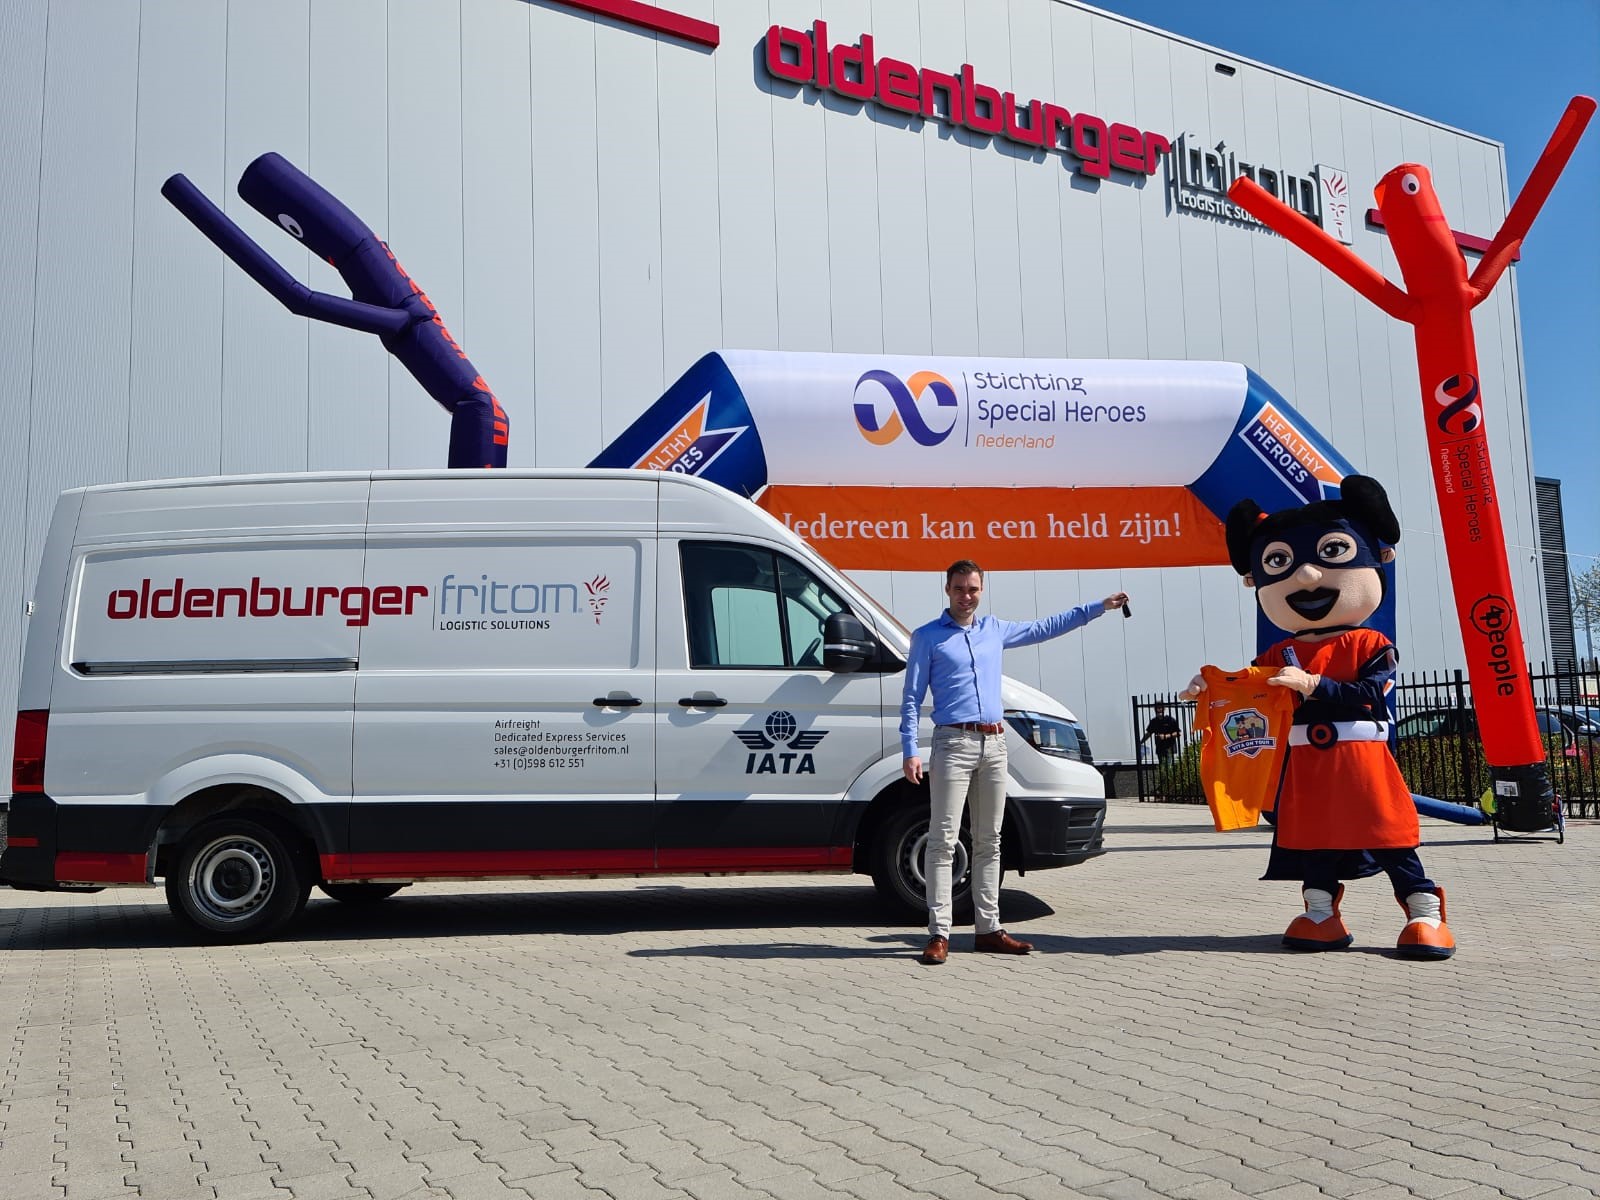 Logistiek dienstverlener Oldenburger|Fritom uit Veendam is een partnership aangegaan met Stichting Special Heroes Nederland.